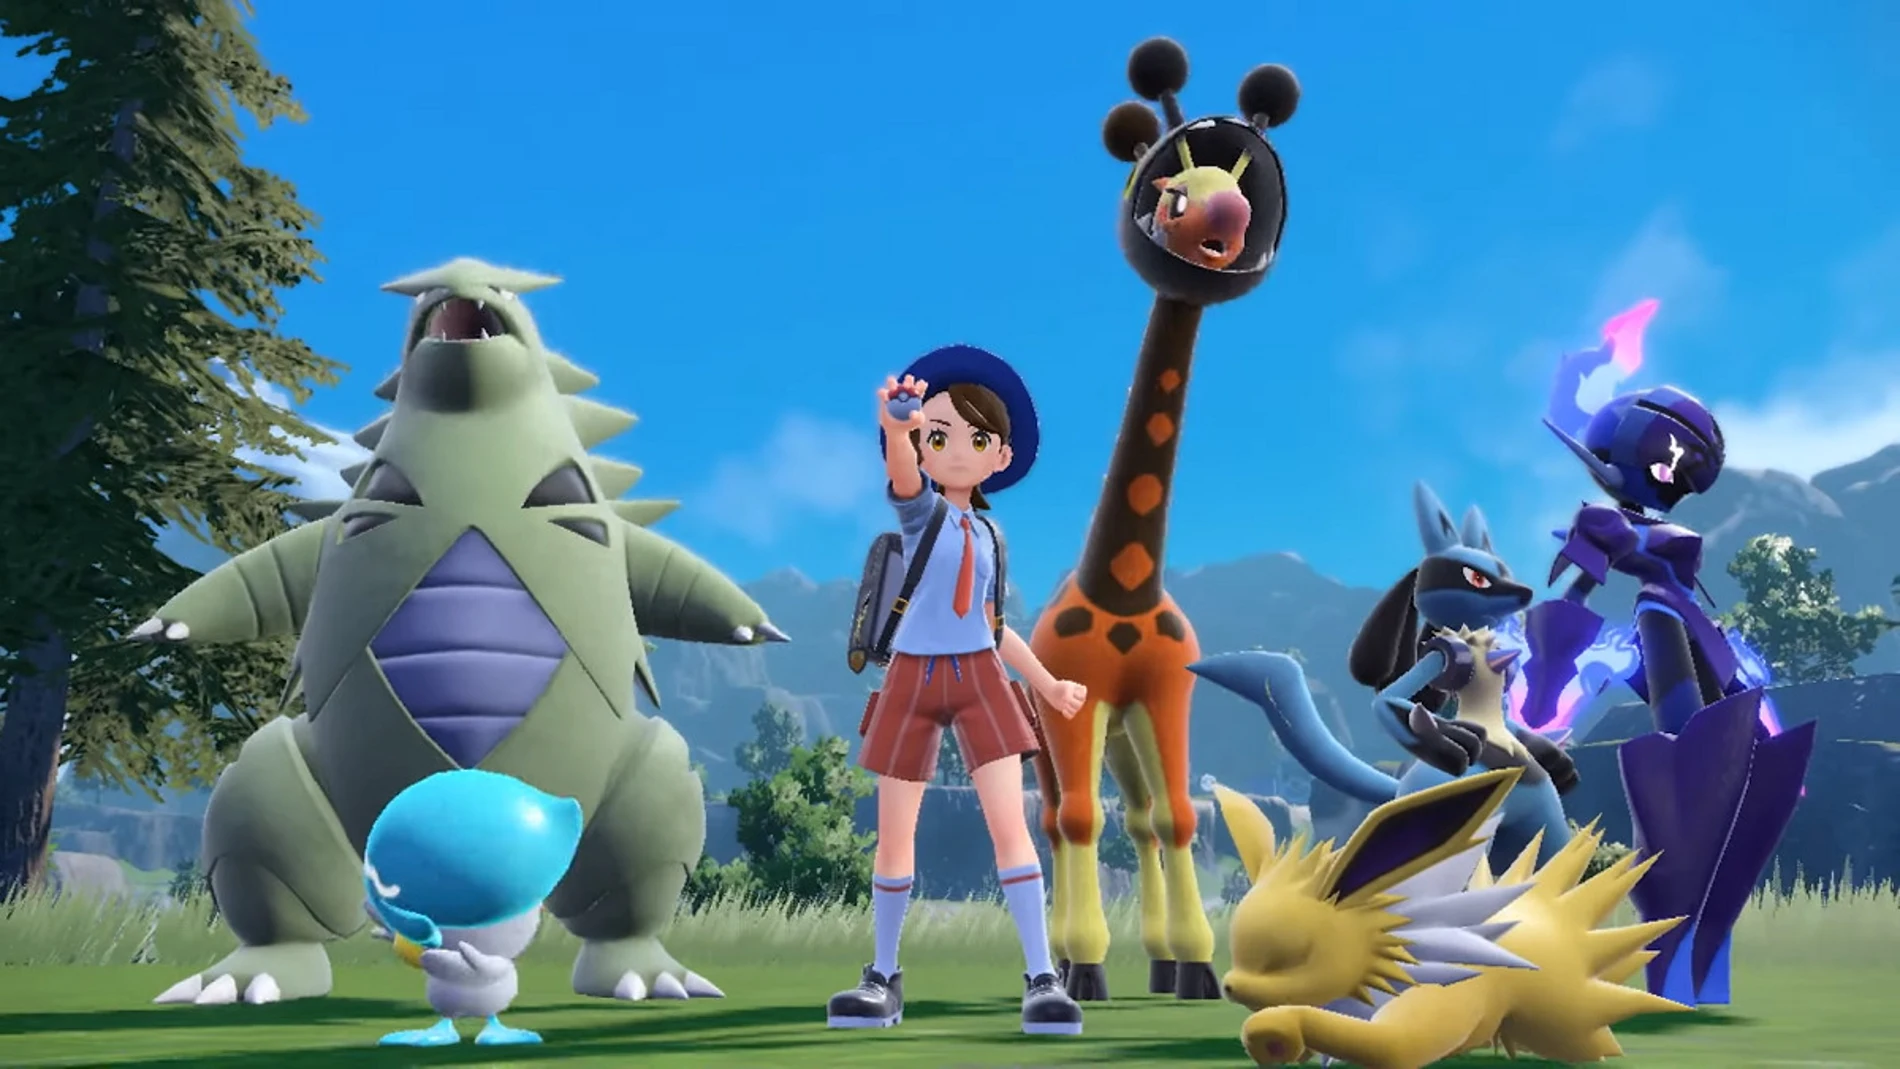 Pokémon Escarlata y Púrpura: Mejor orden para superar la historia principal  y gimnasios